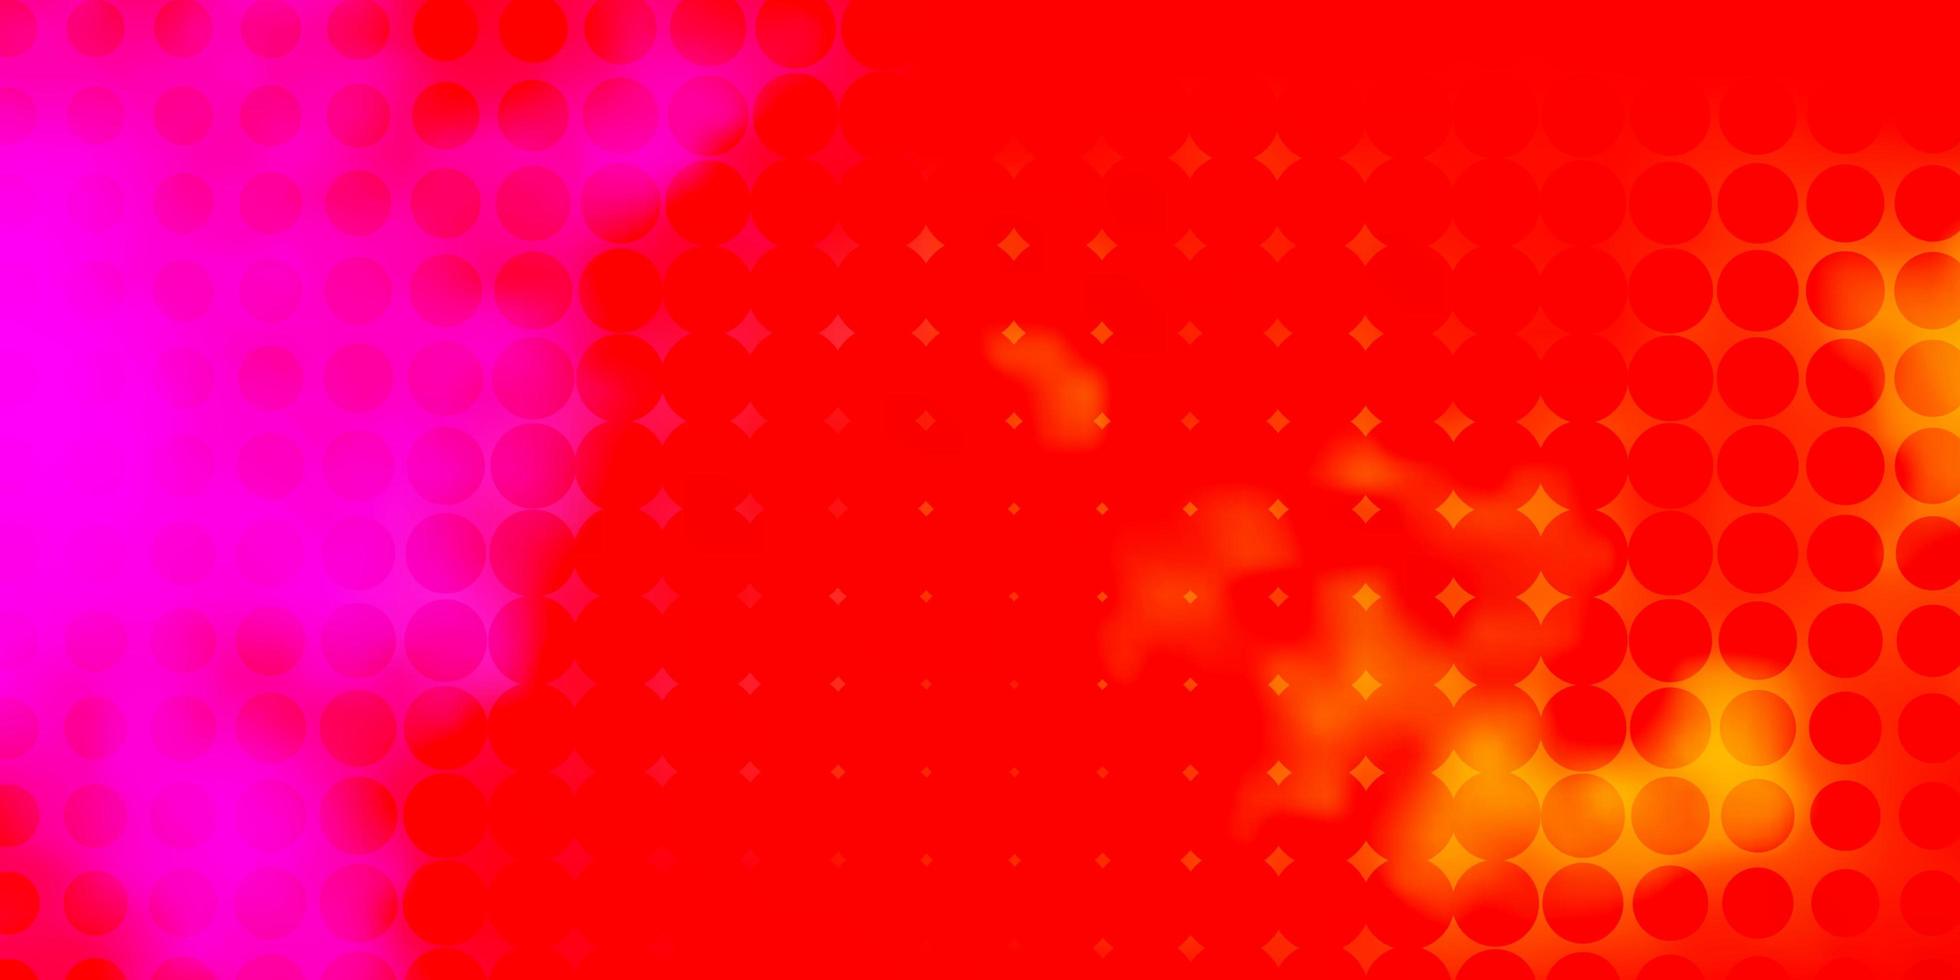 ljusrosa, gul vektormall med cirklar. vektor